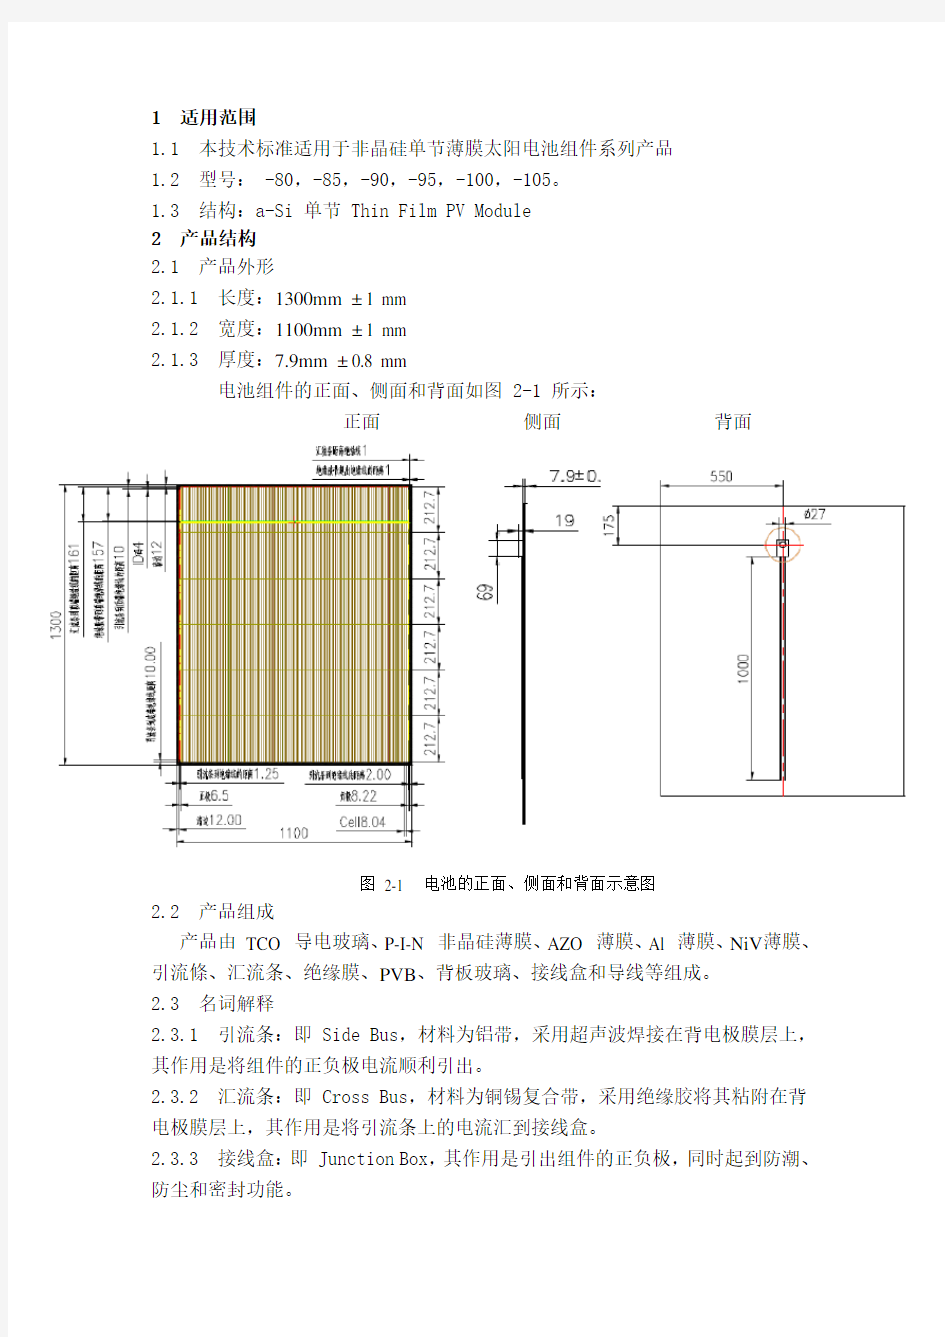 非晶硅薄膜太阳能电池产品技术规格书